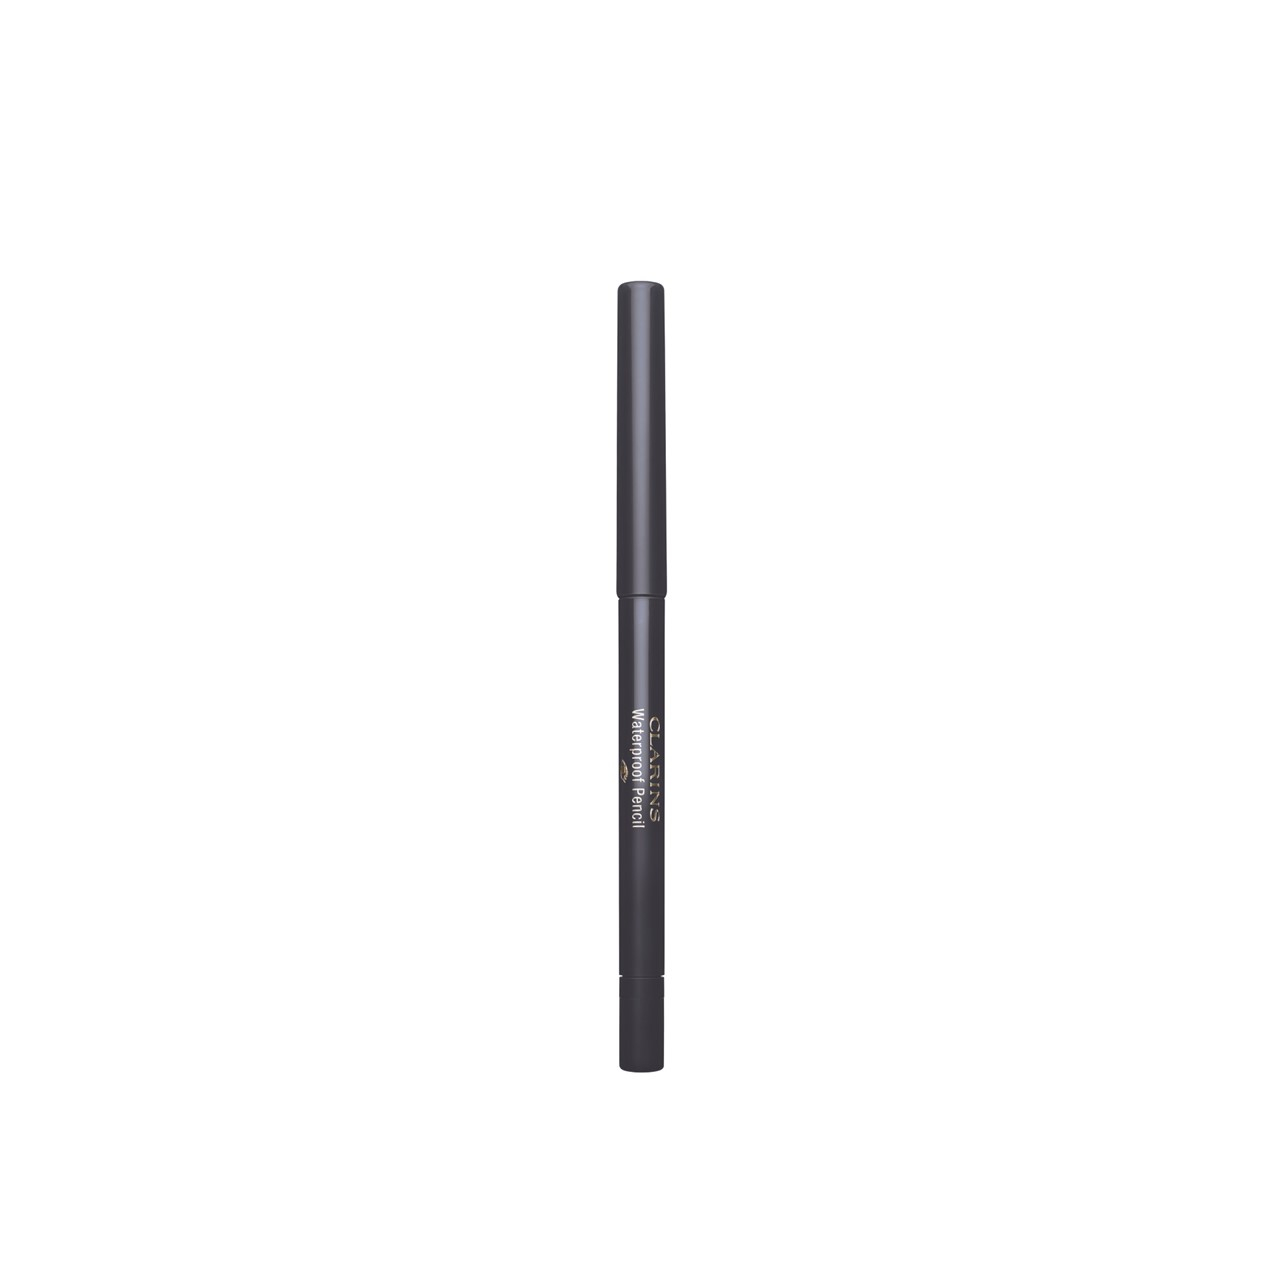 Clarins Waterproof Pencil Long-Lasting Eyeliner 06 Smoked Wood 0.29g